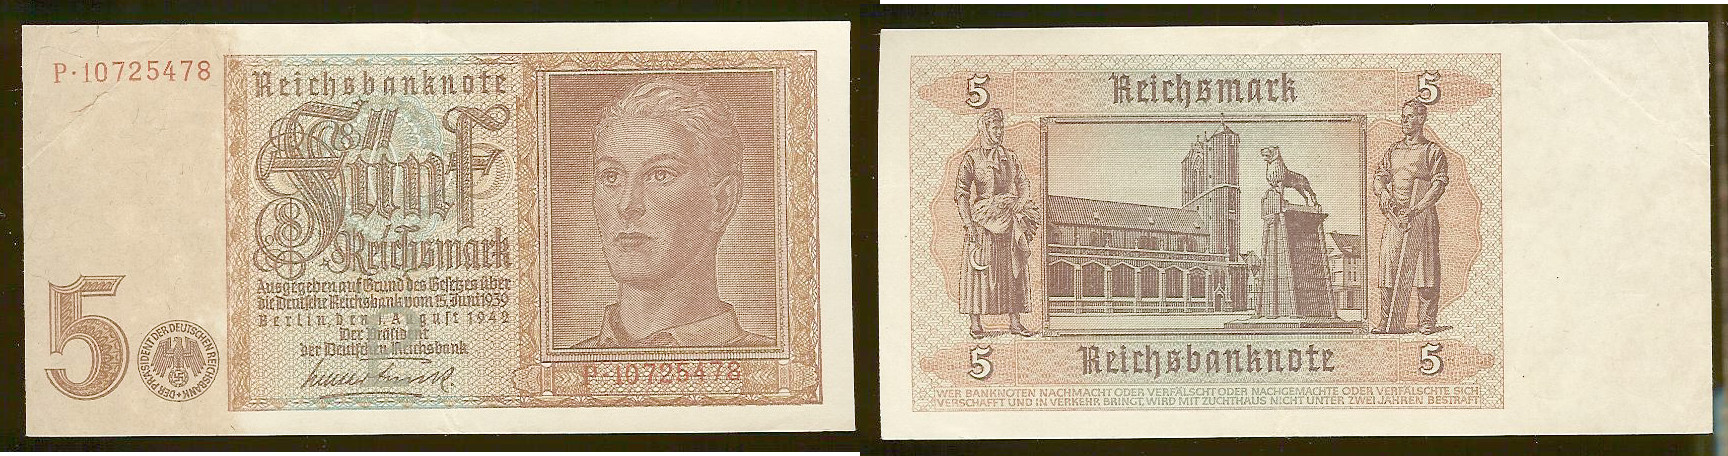 Germany 5 reichsmark 1942 EF